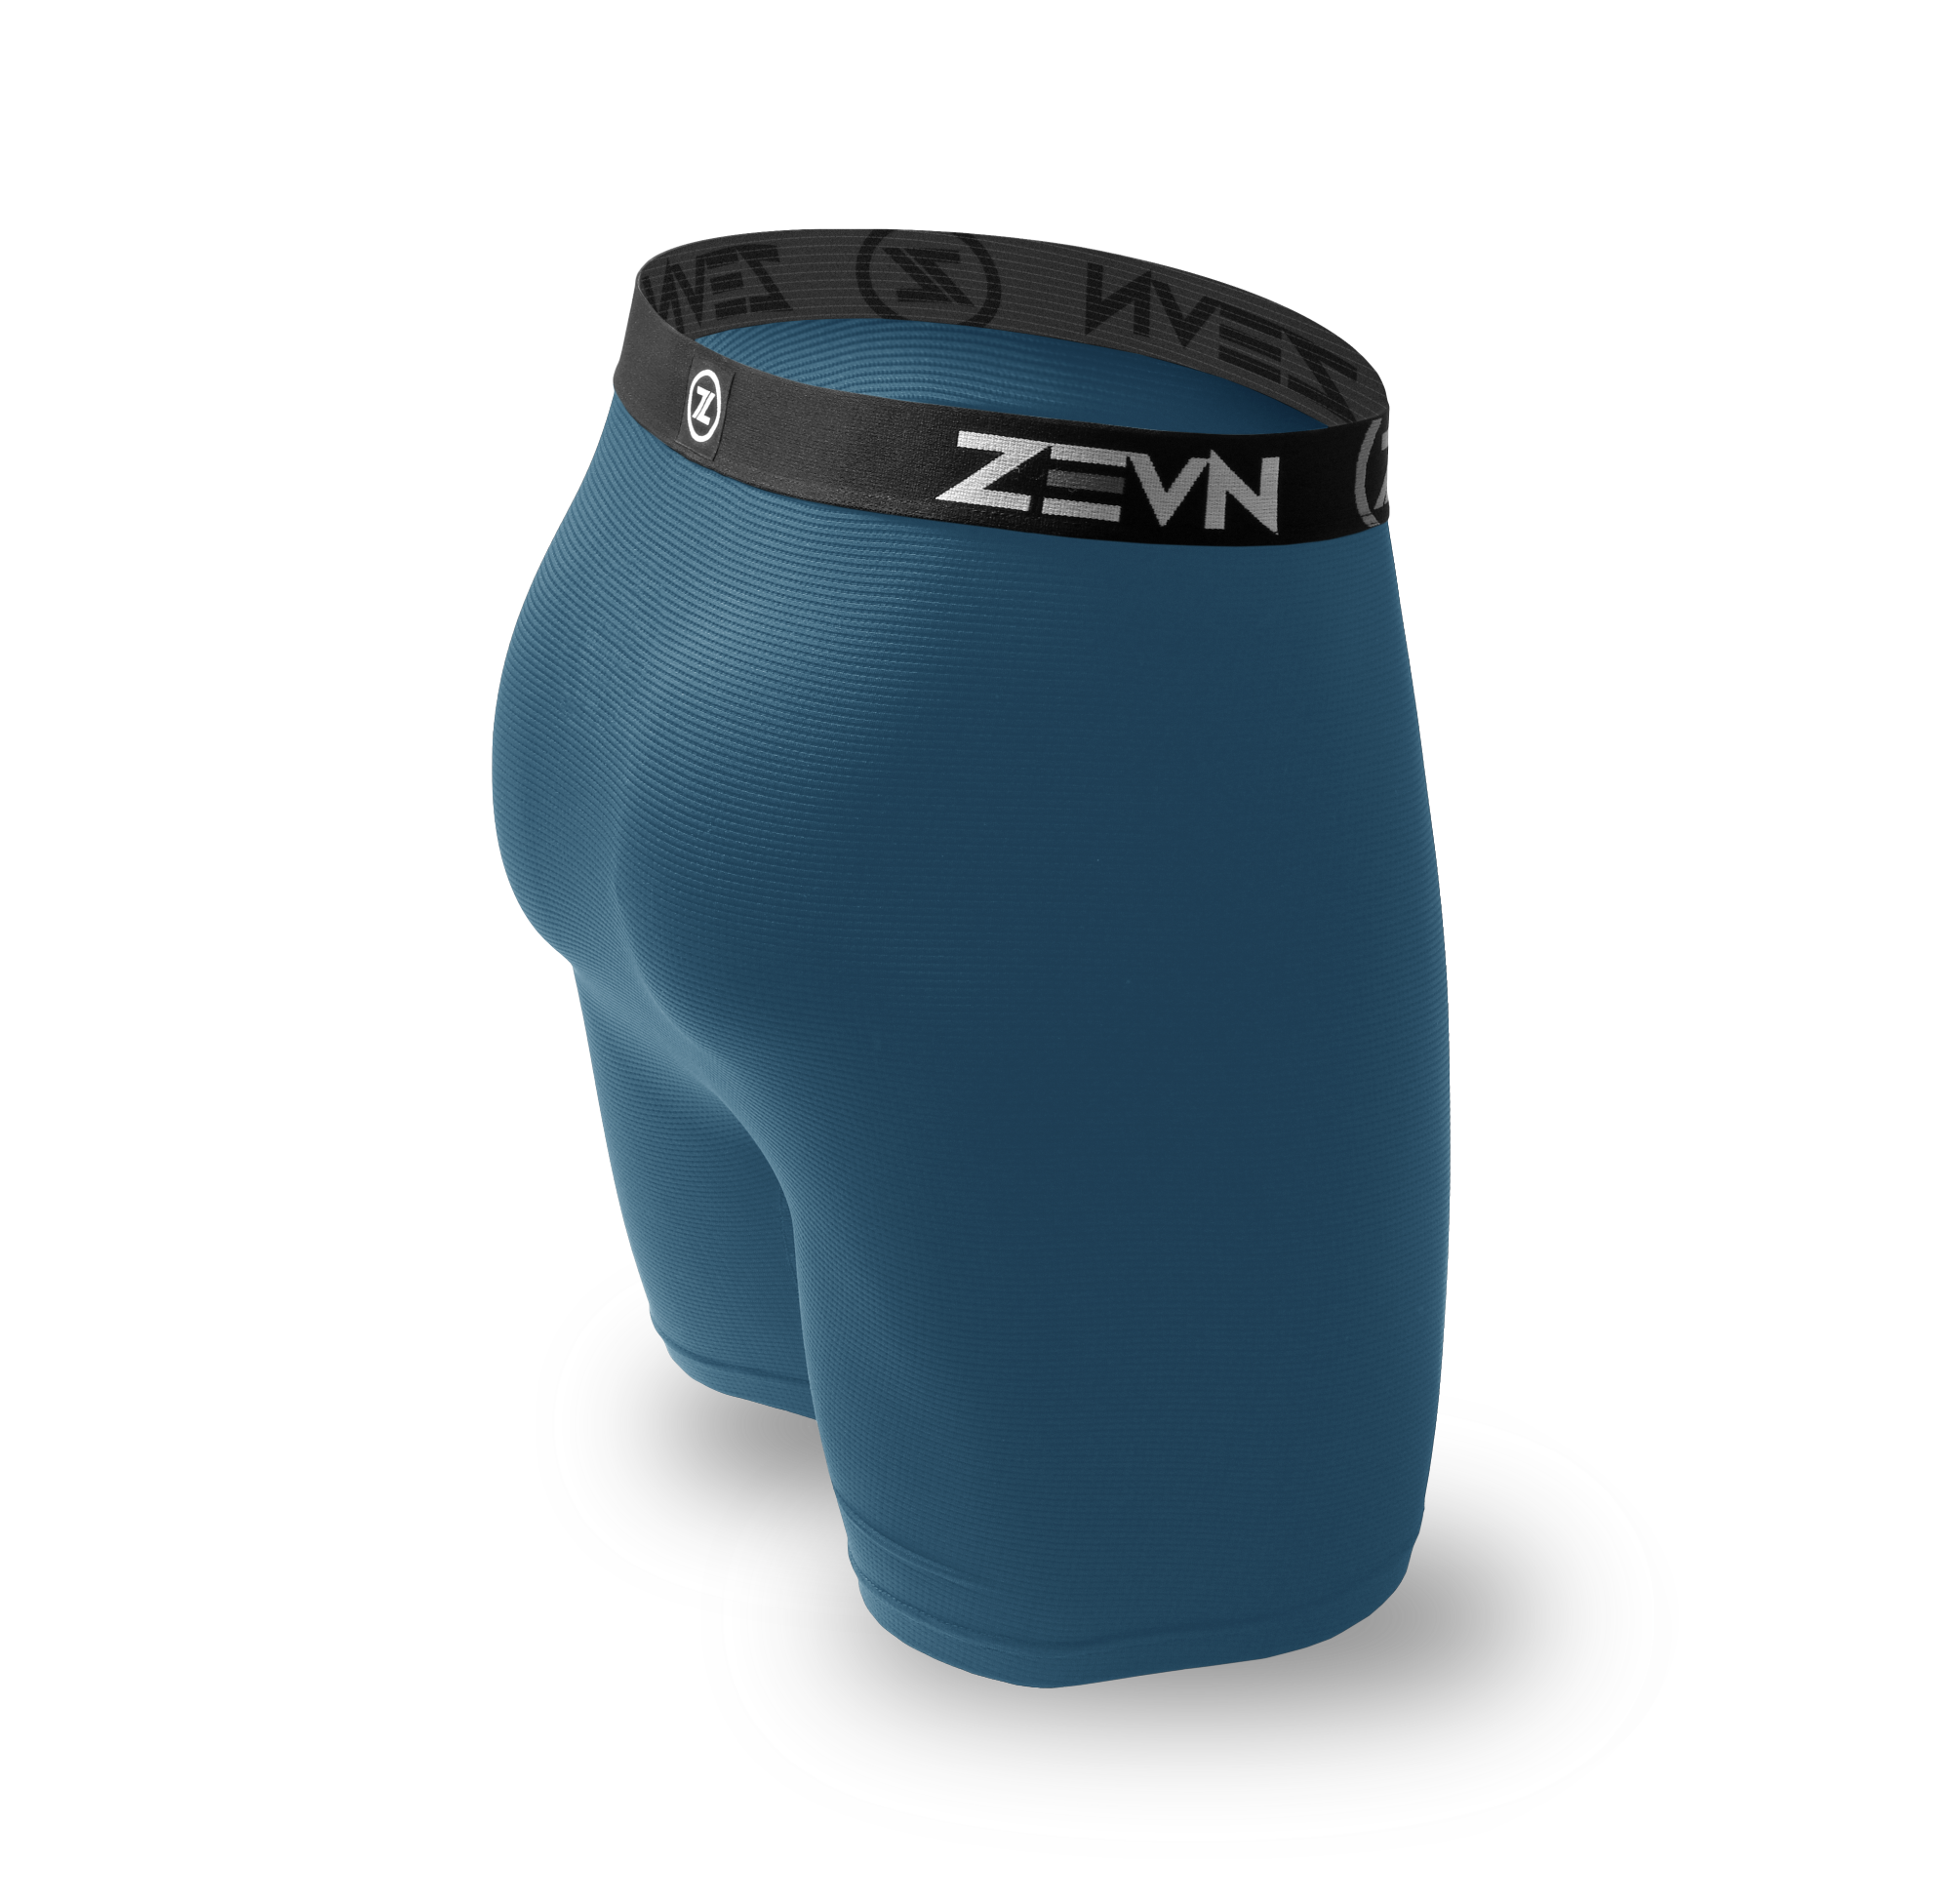 ZVM Airmesh ZEVN Sports Undergarments for Men